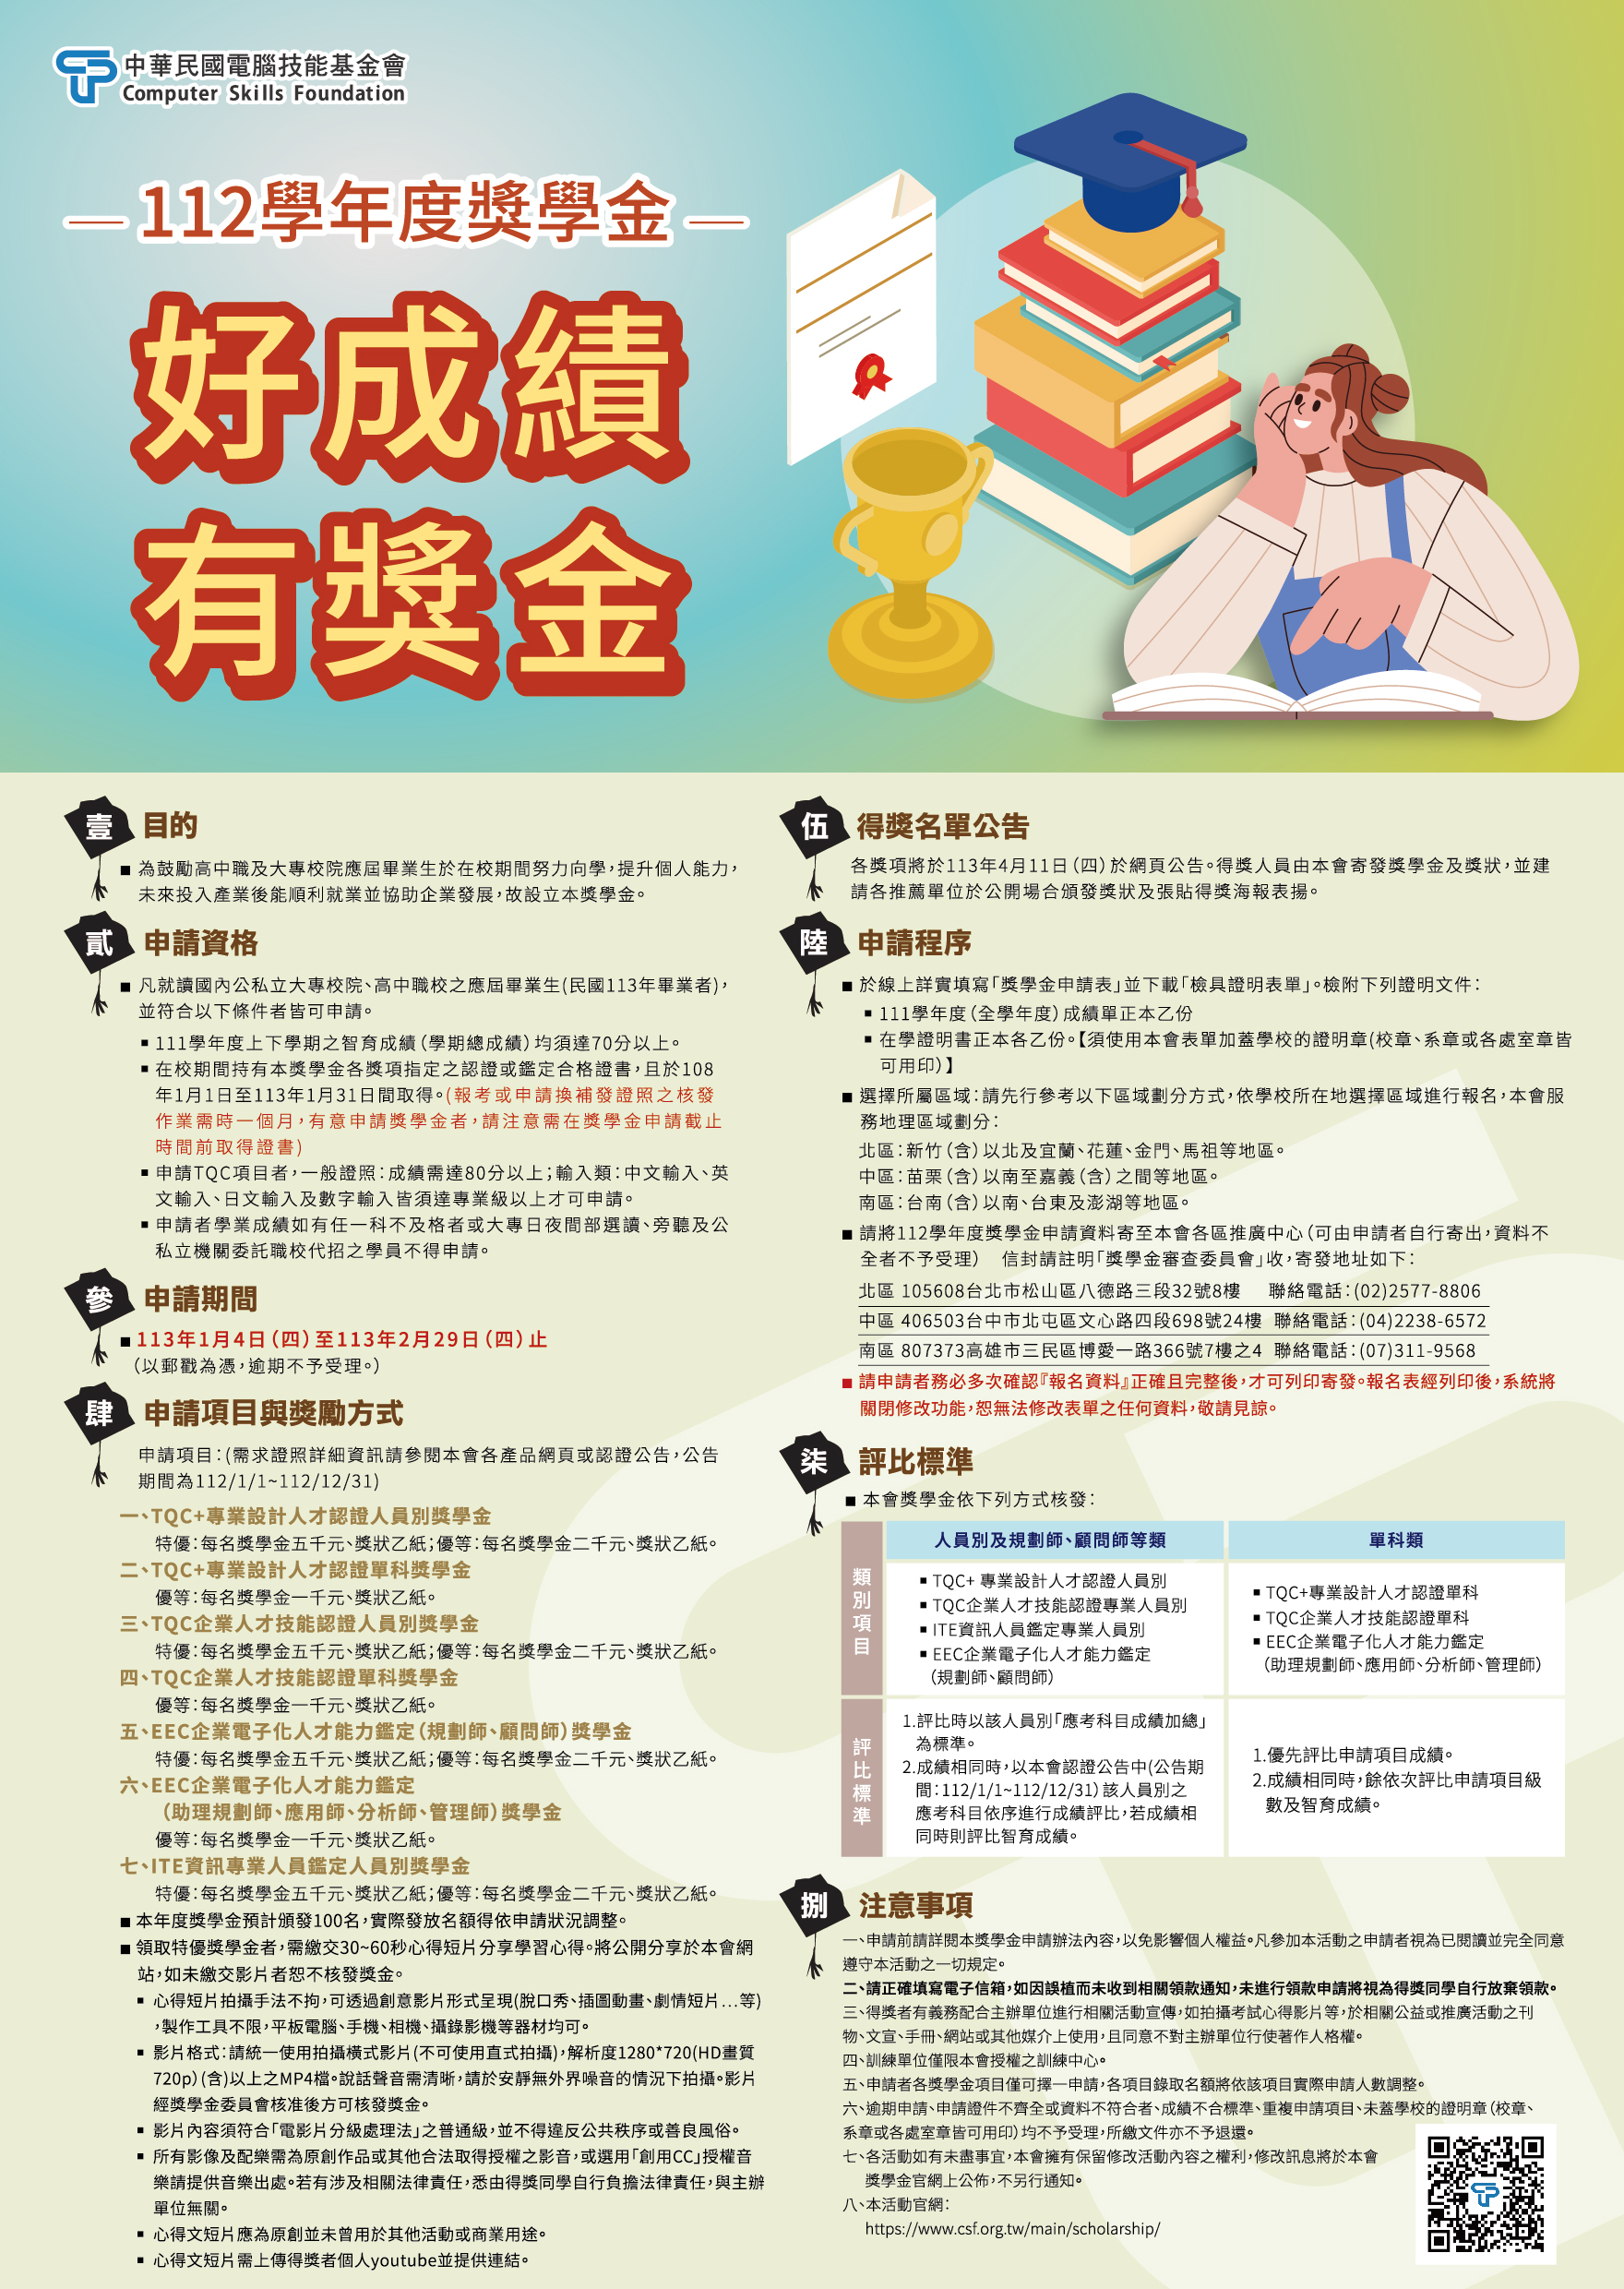 112 學年度財團法人中華民國電腦技能基金會-獎學金申請辦法